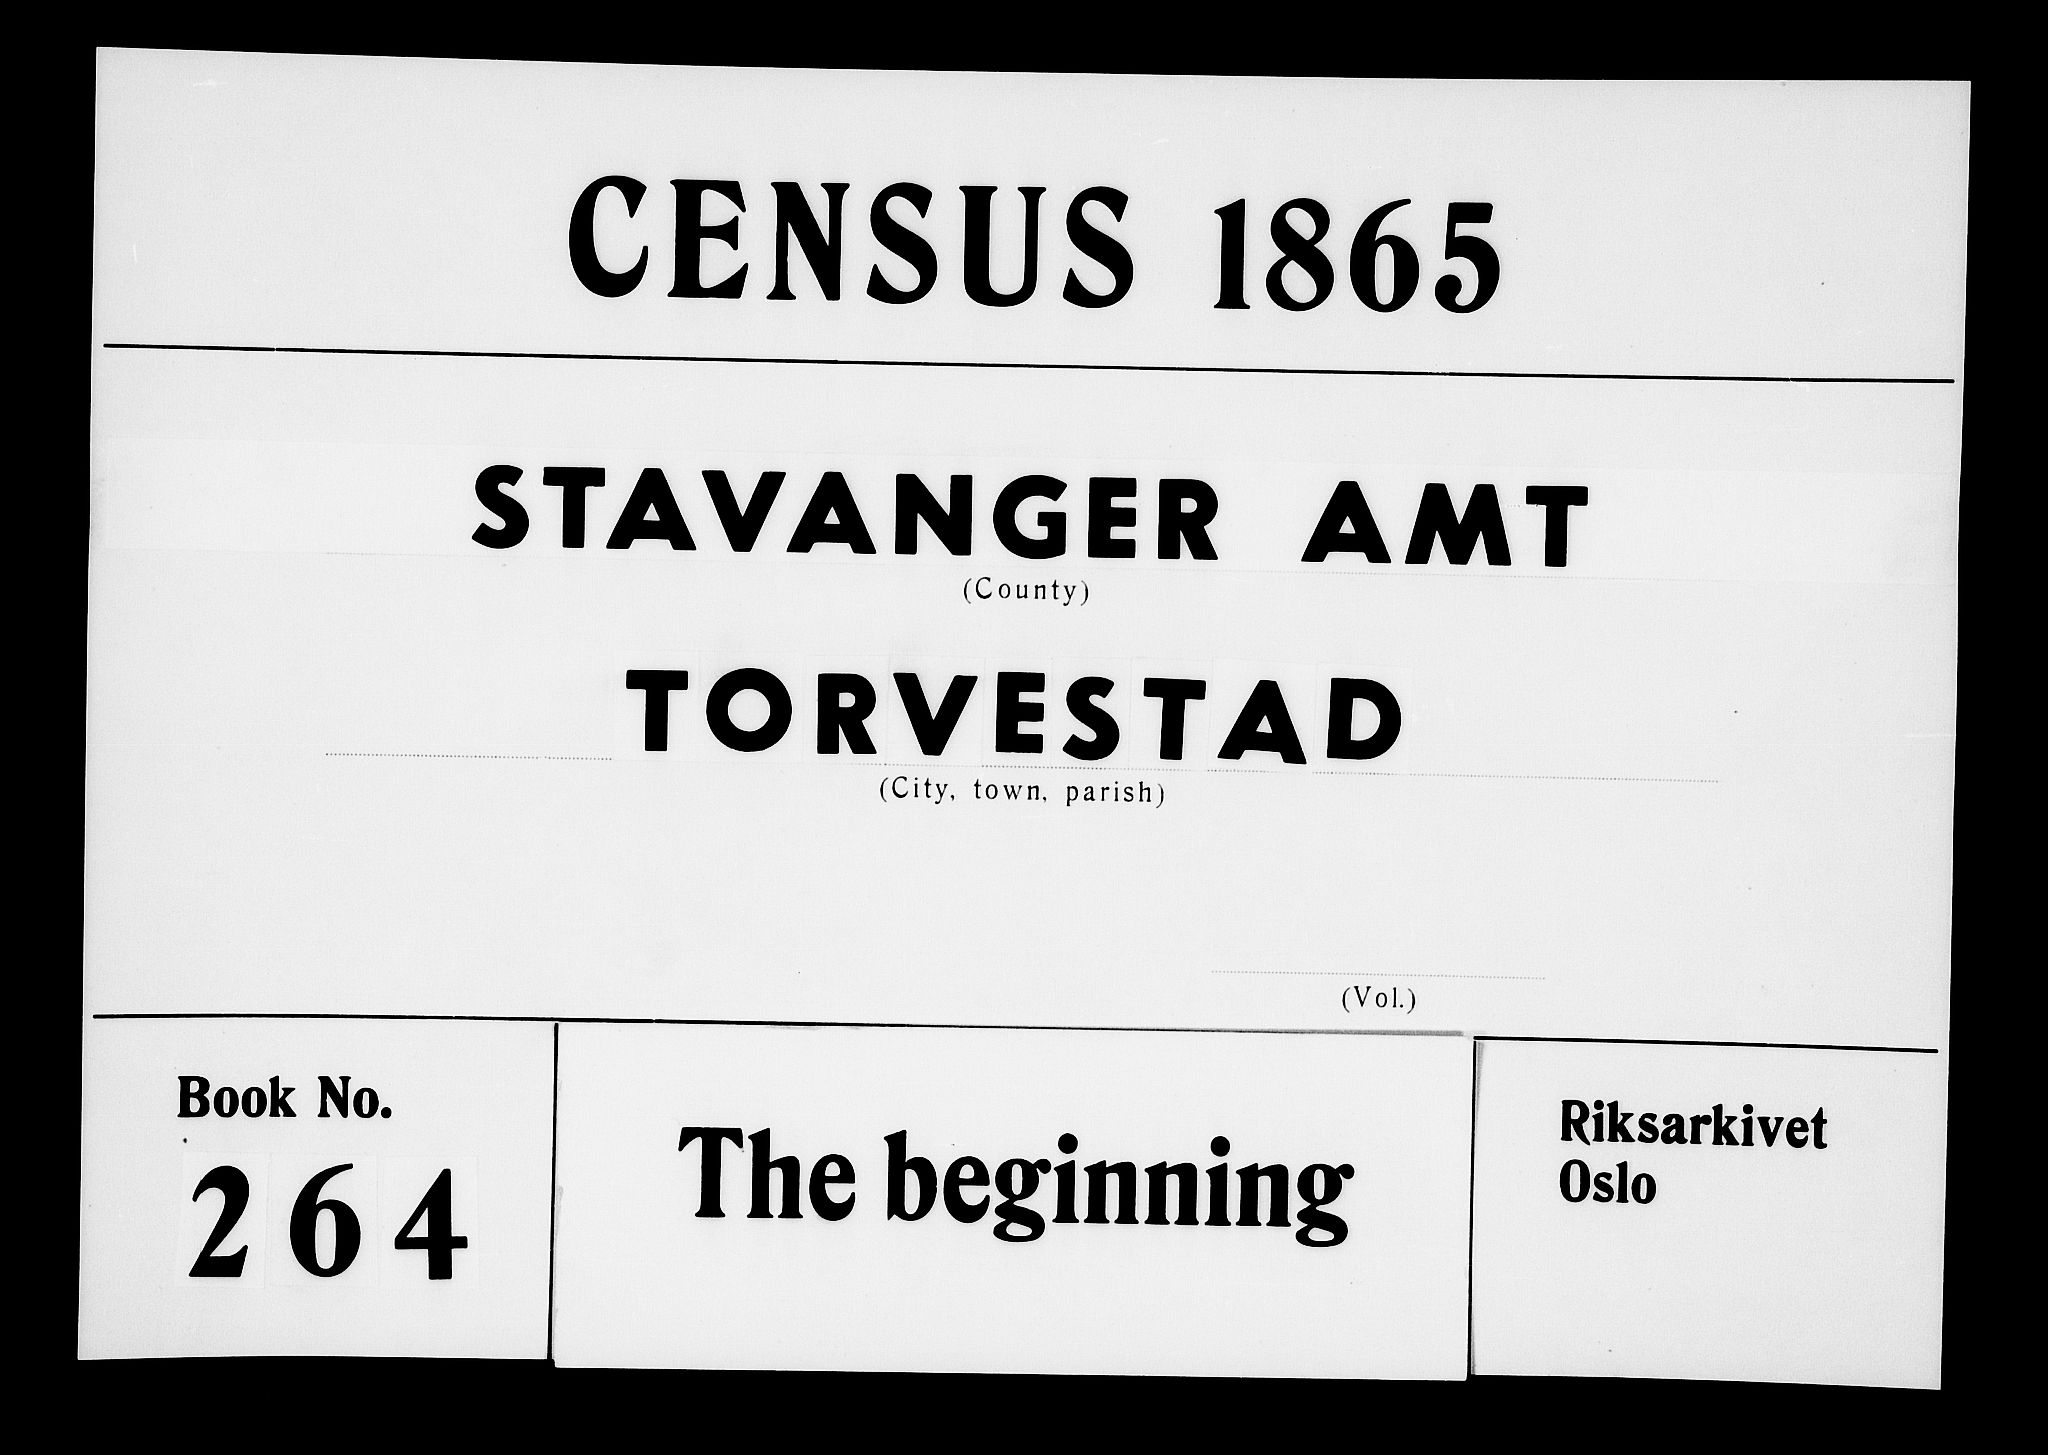 RA, Folketelling 1865 for 1152L Torvastad prestegjeld, Torvastad sokn, Skåre sokn og Utsira sokn, 1865, s. 1